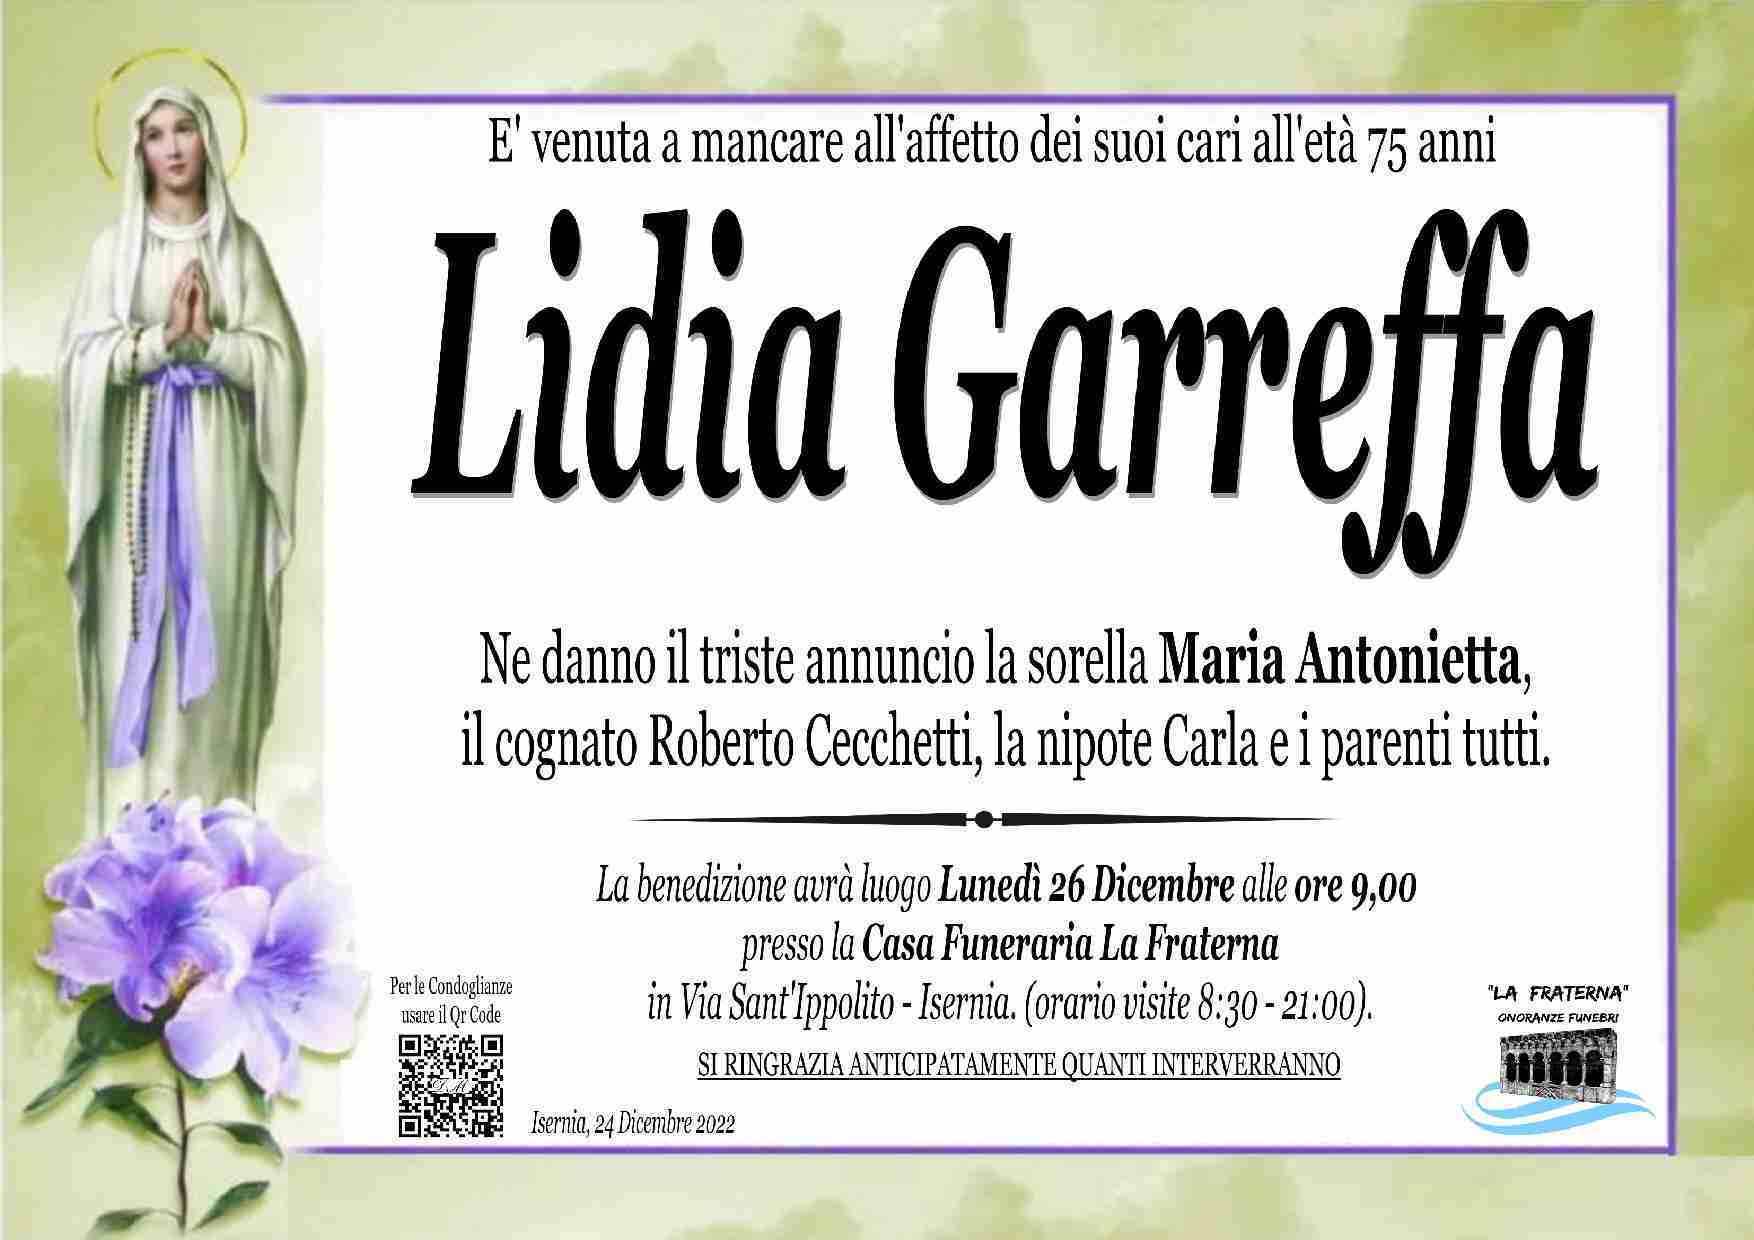 Lidia Garreffa